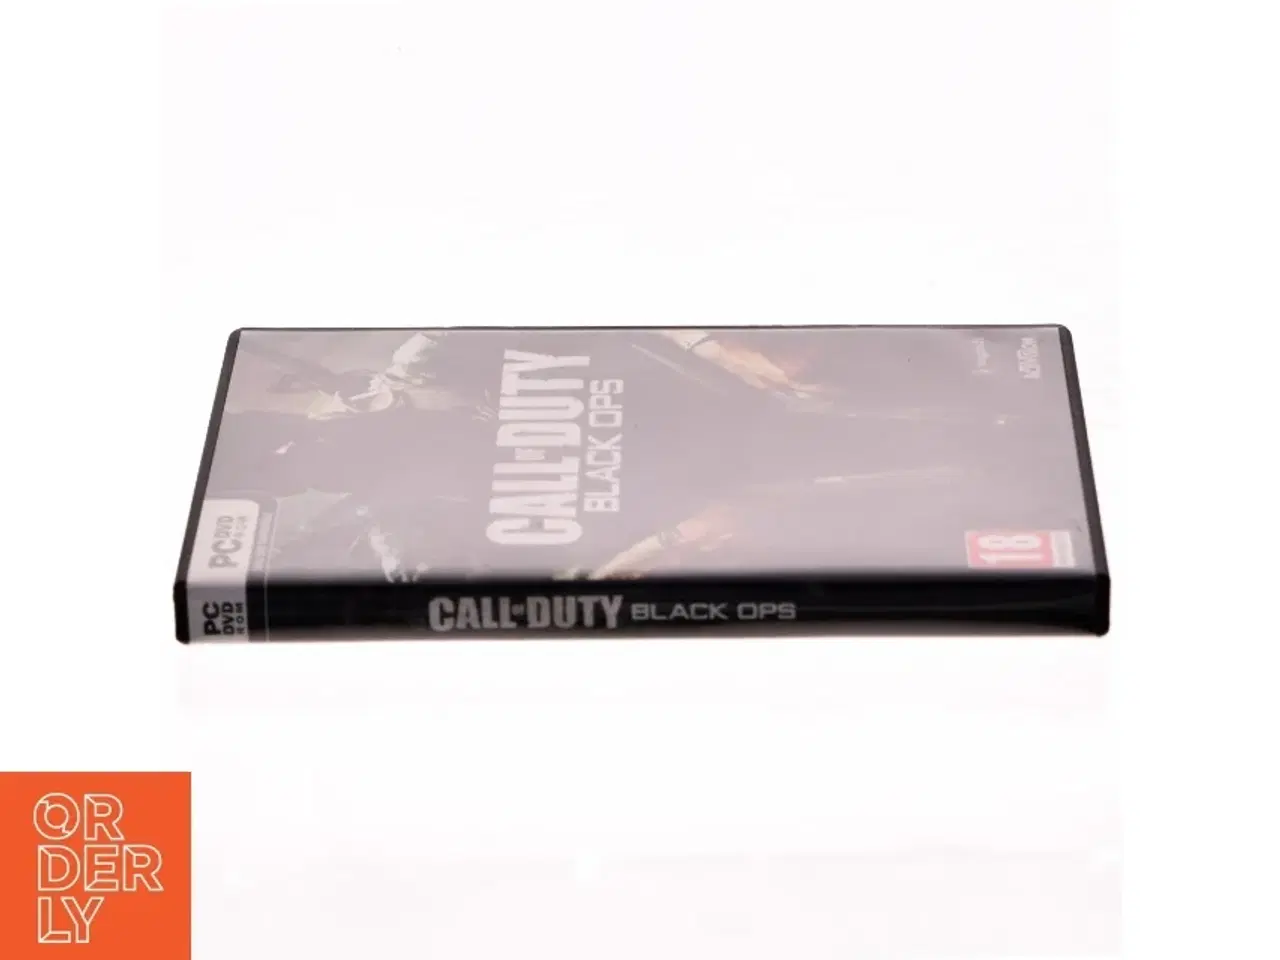 Billede 2 - Call of Duty: Black Ops PC spil fra Activision